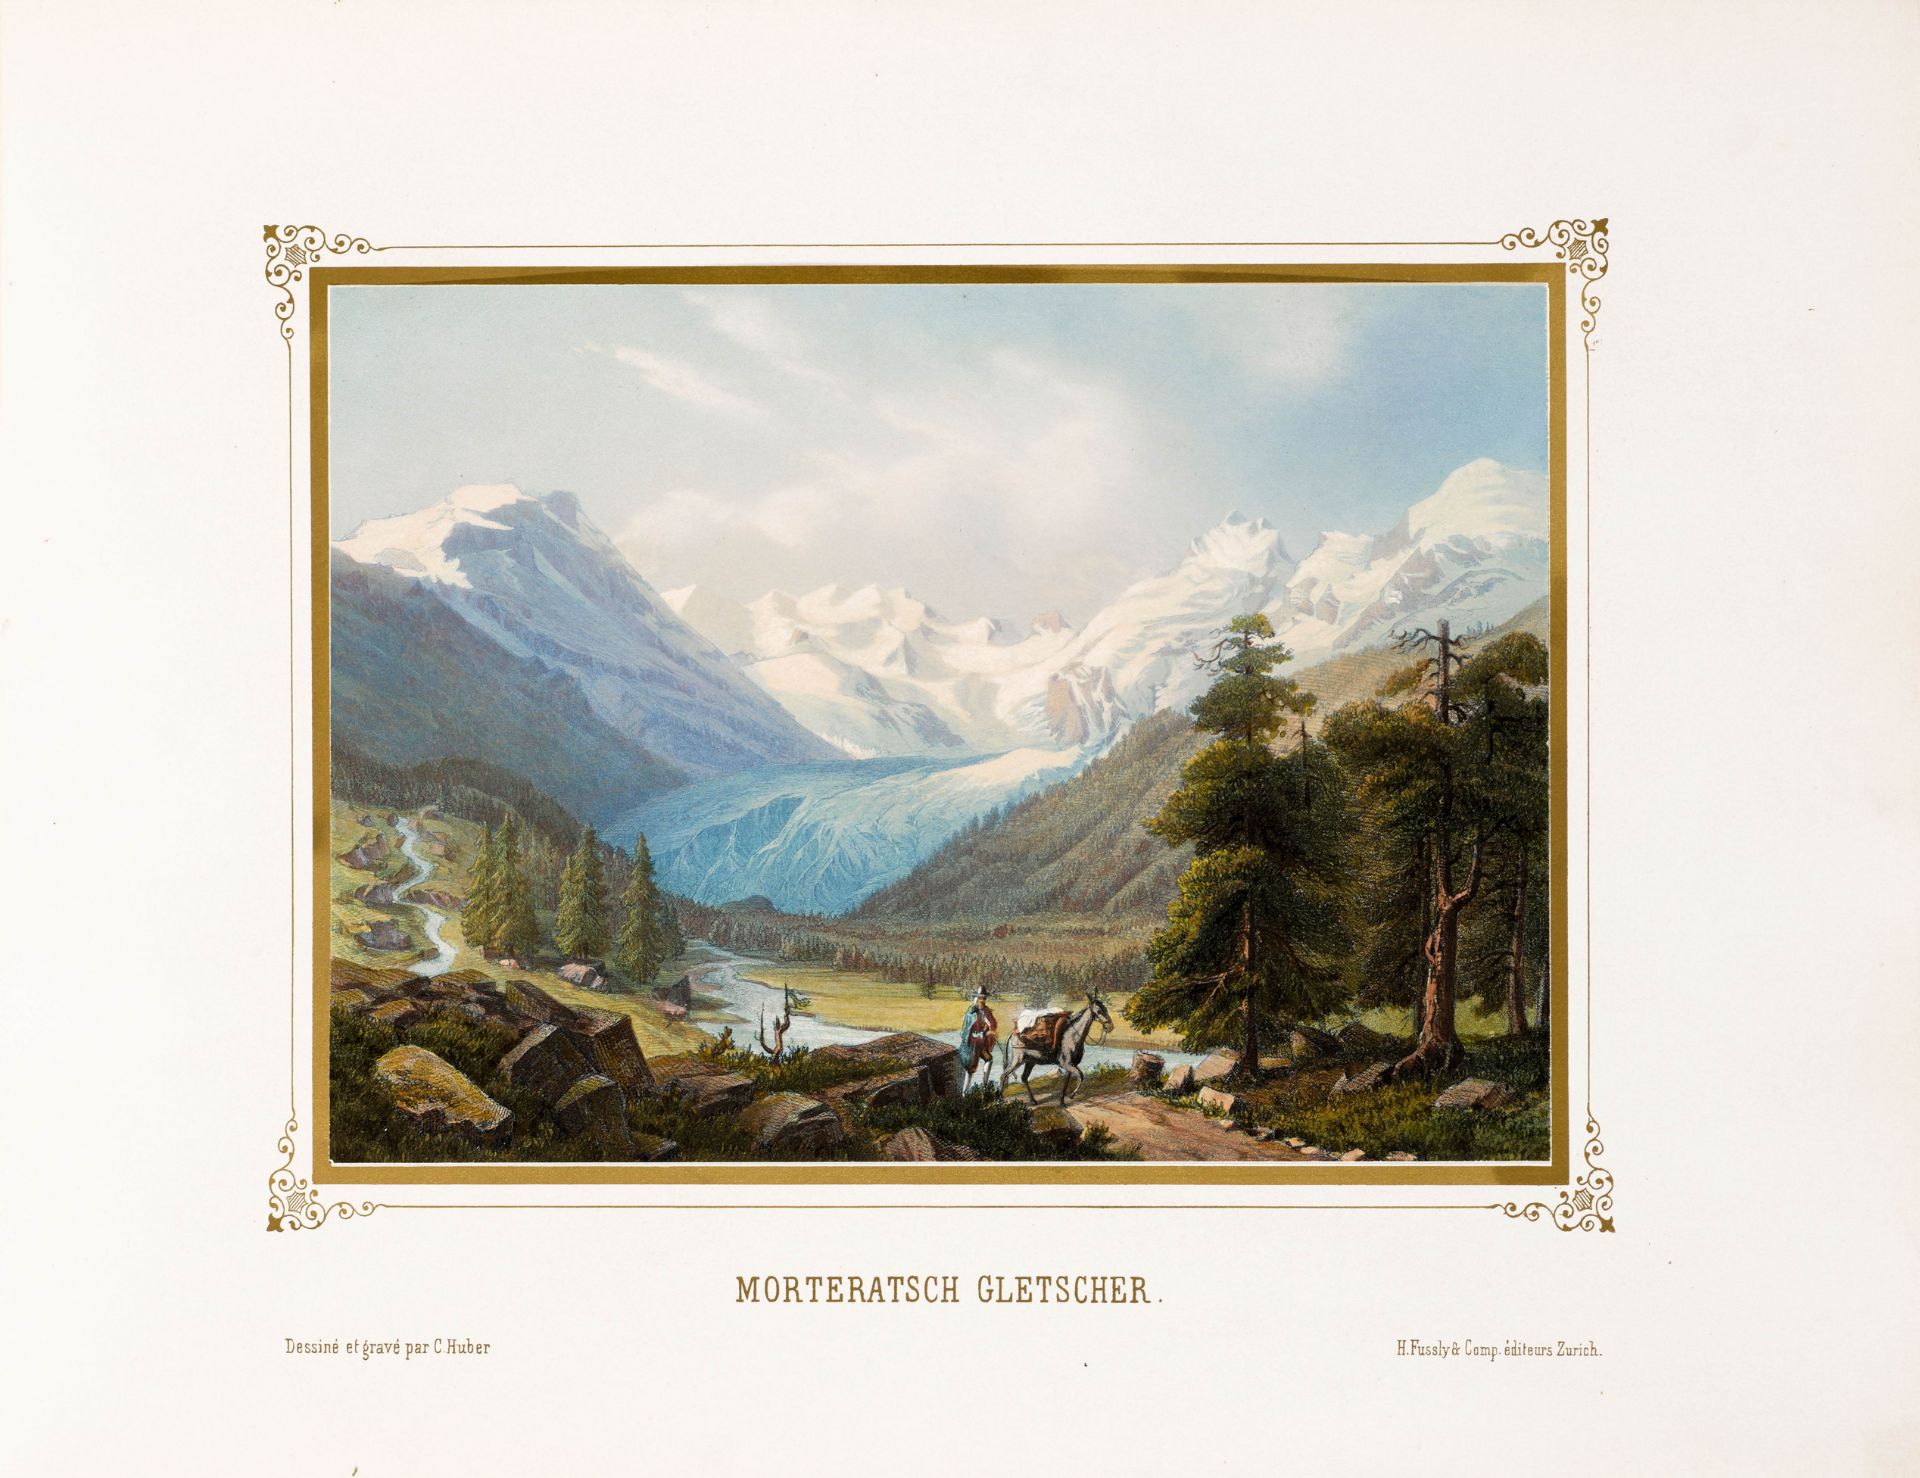 GRAUBÜNDEN -Huber, C[aspar].Album von St. Moritz in Oberengadin Ct. Graubünden. Mit gest. kolor.